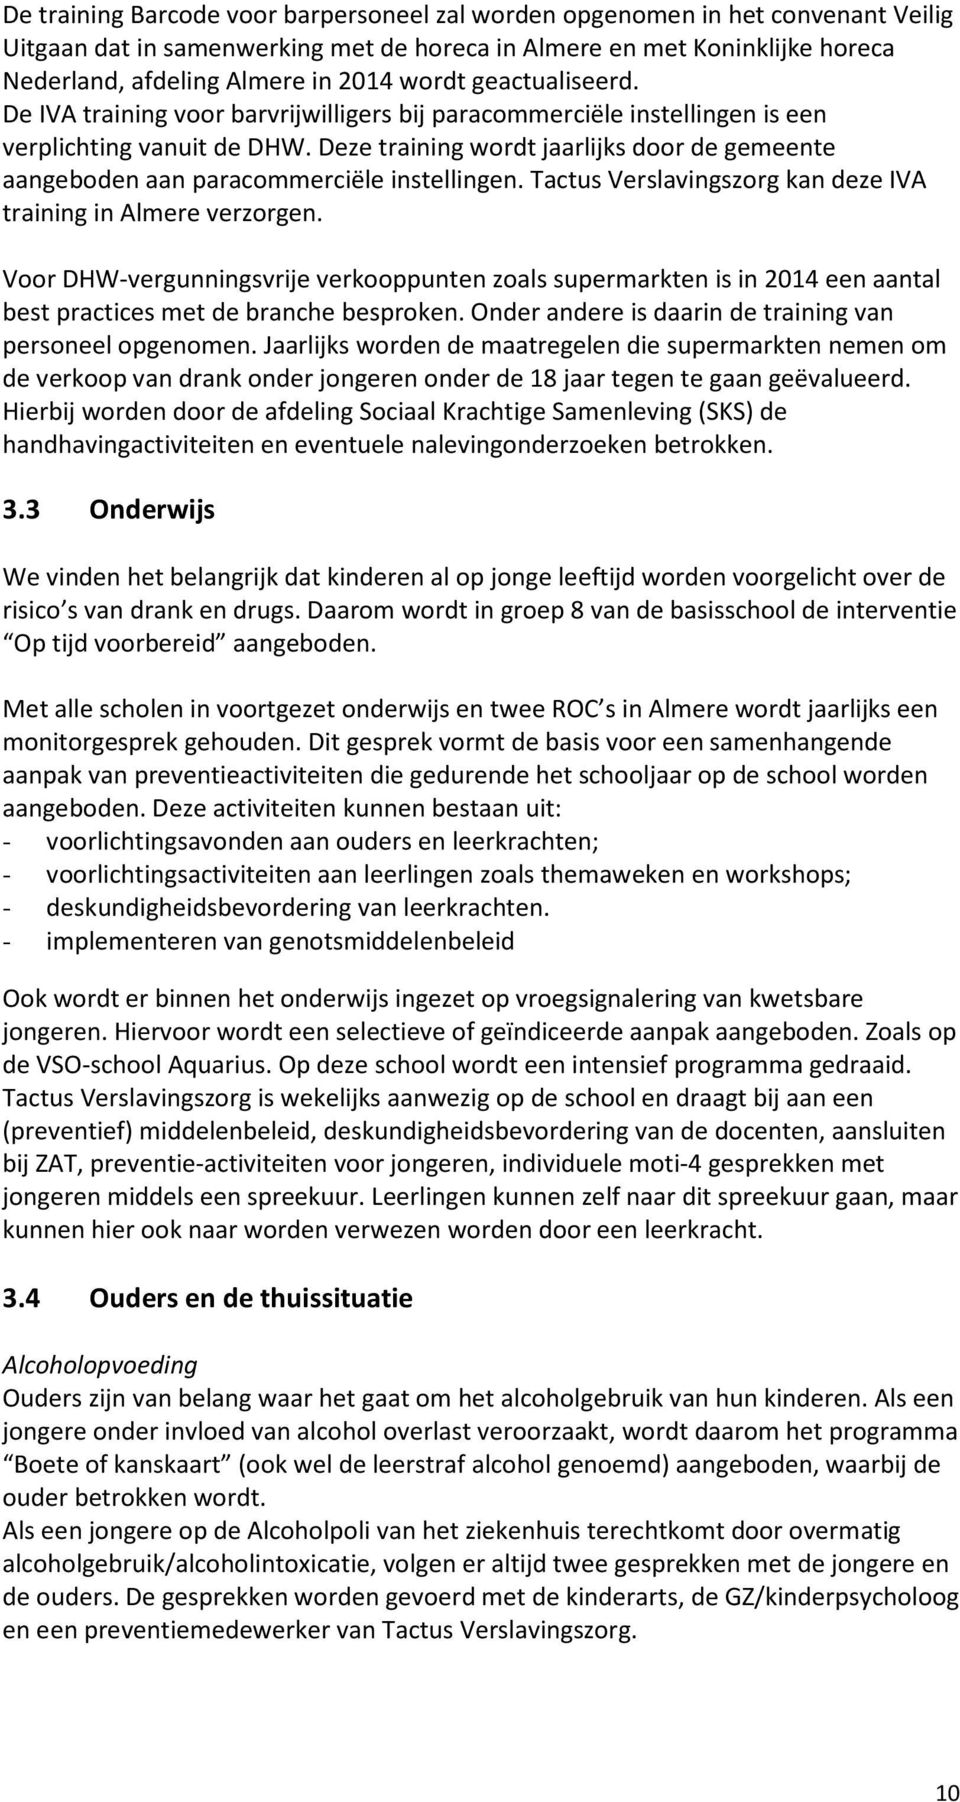 Deze training wordt jaarlijks door de gemeente aangeboden aan paracommerciële instellingen. Tactus Verslavingszorg kan deze IVA training in Almere verzorgen.